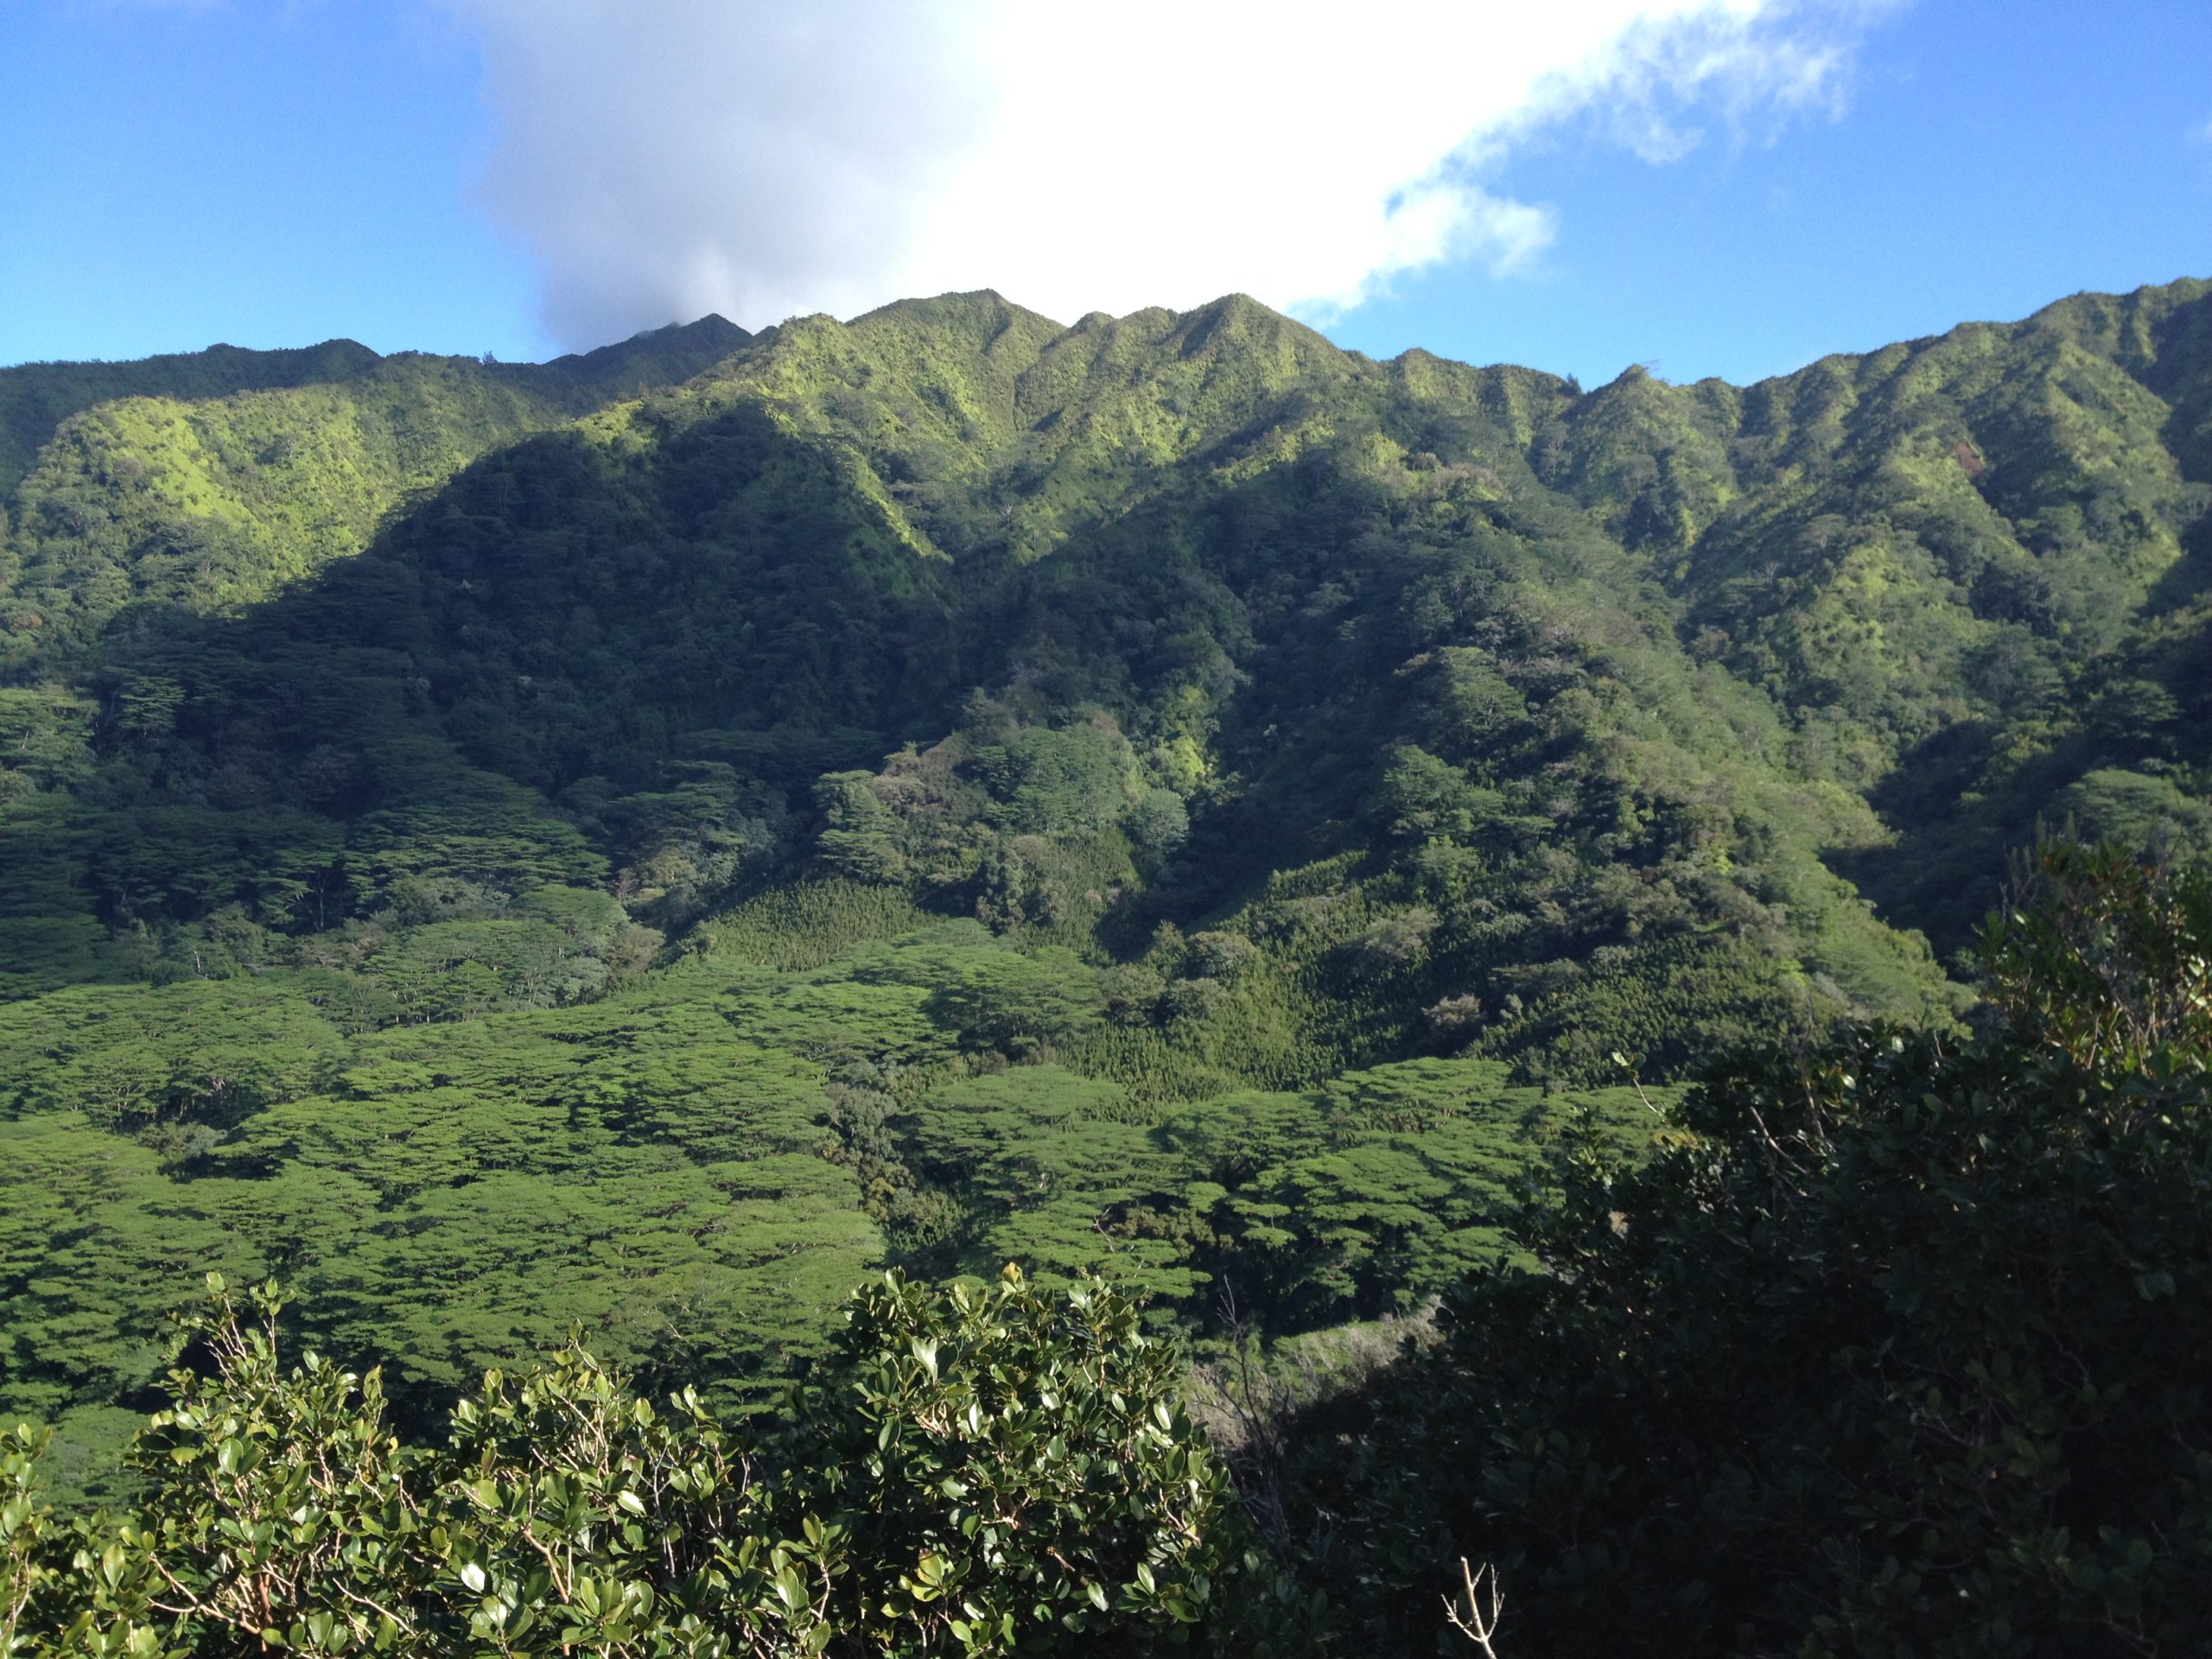 Manoa Valley in Hawaii